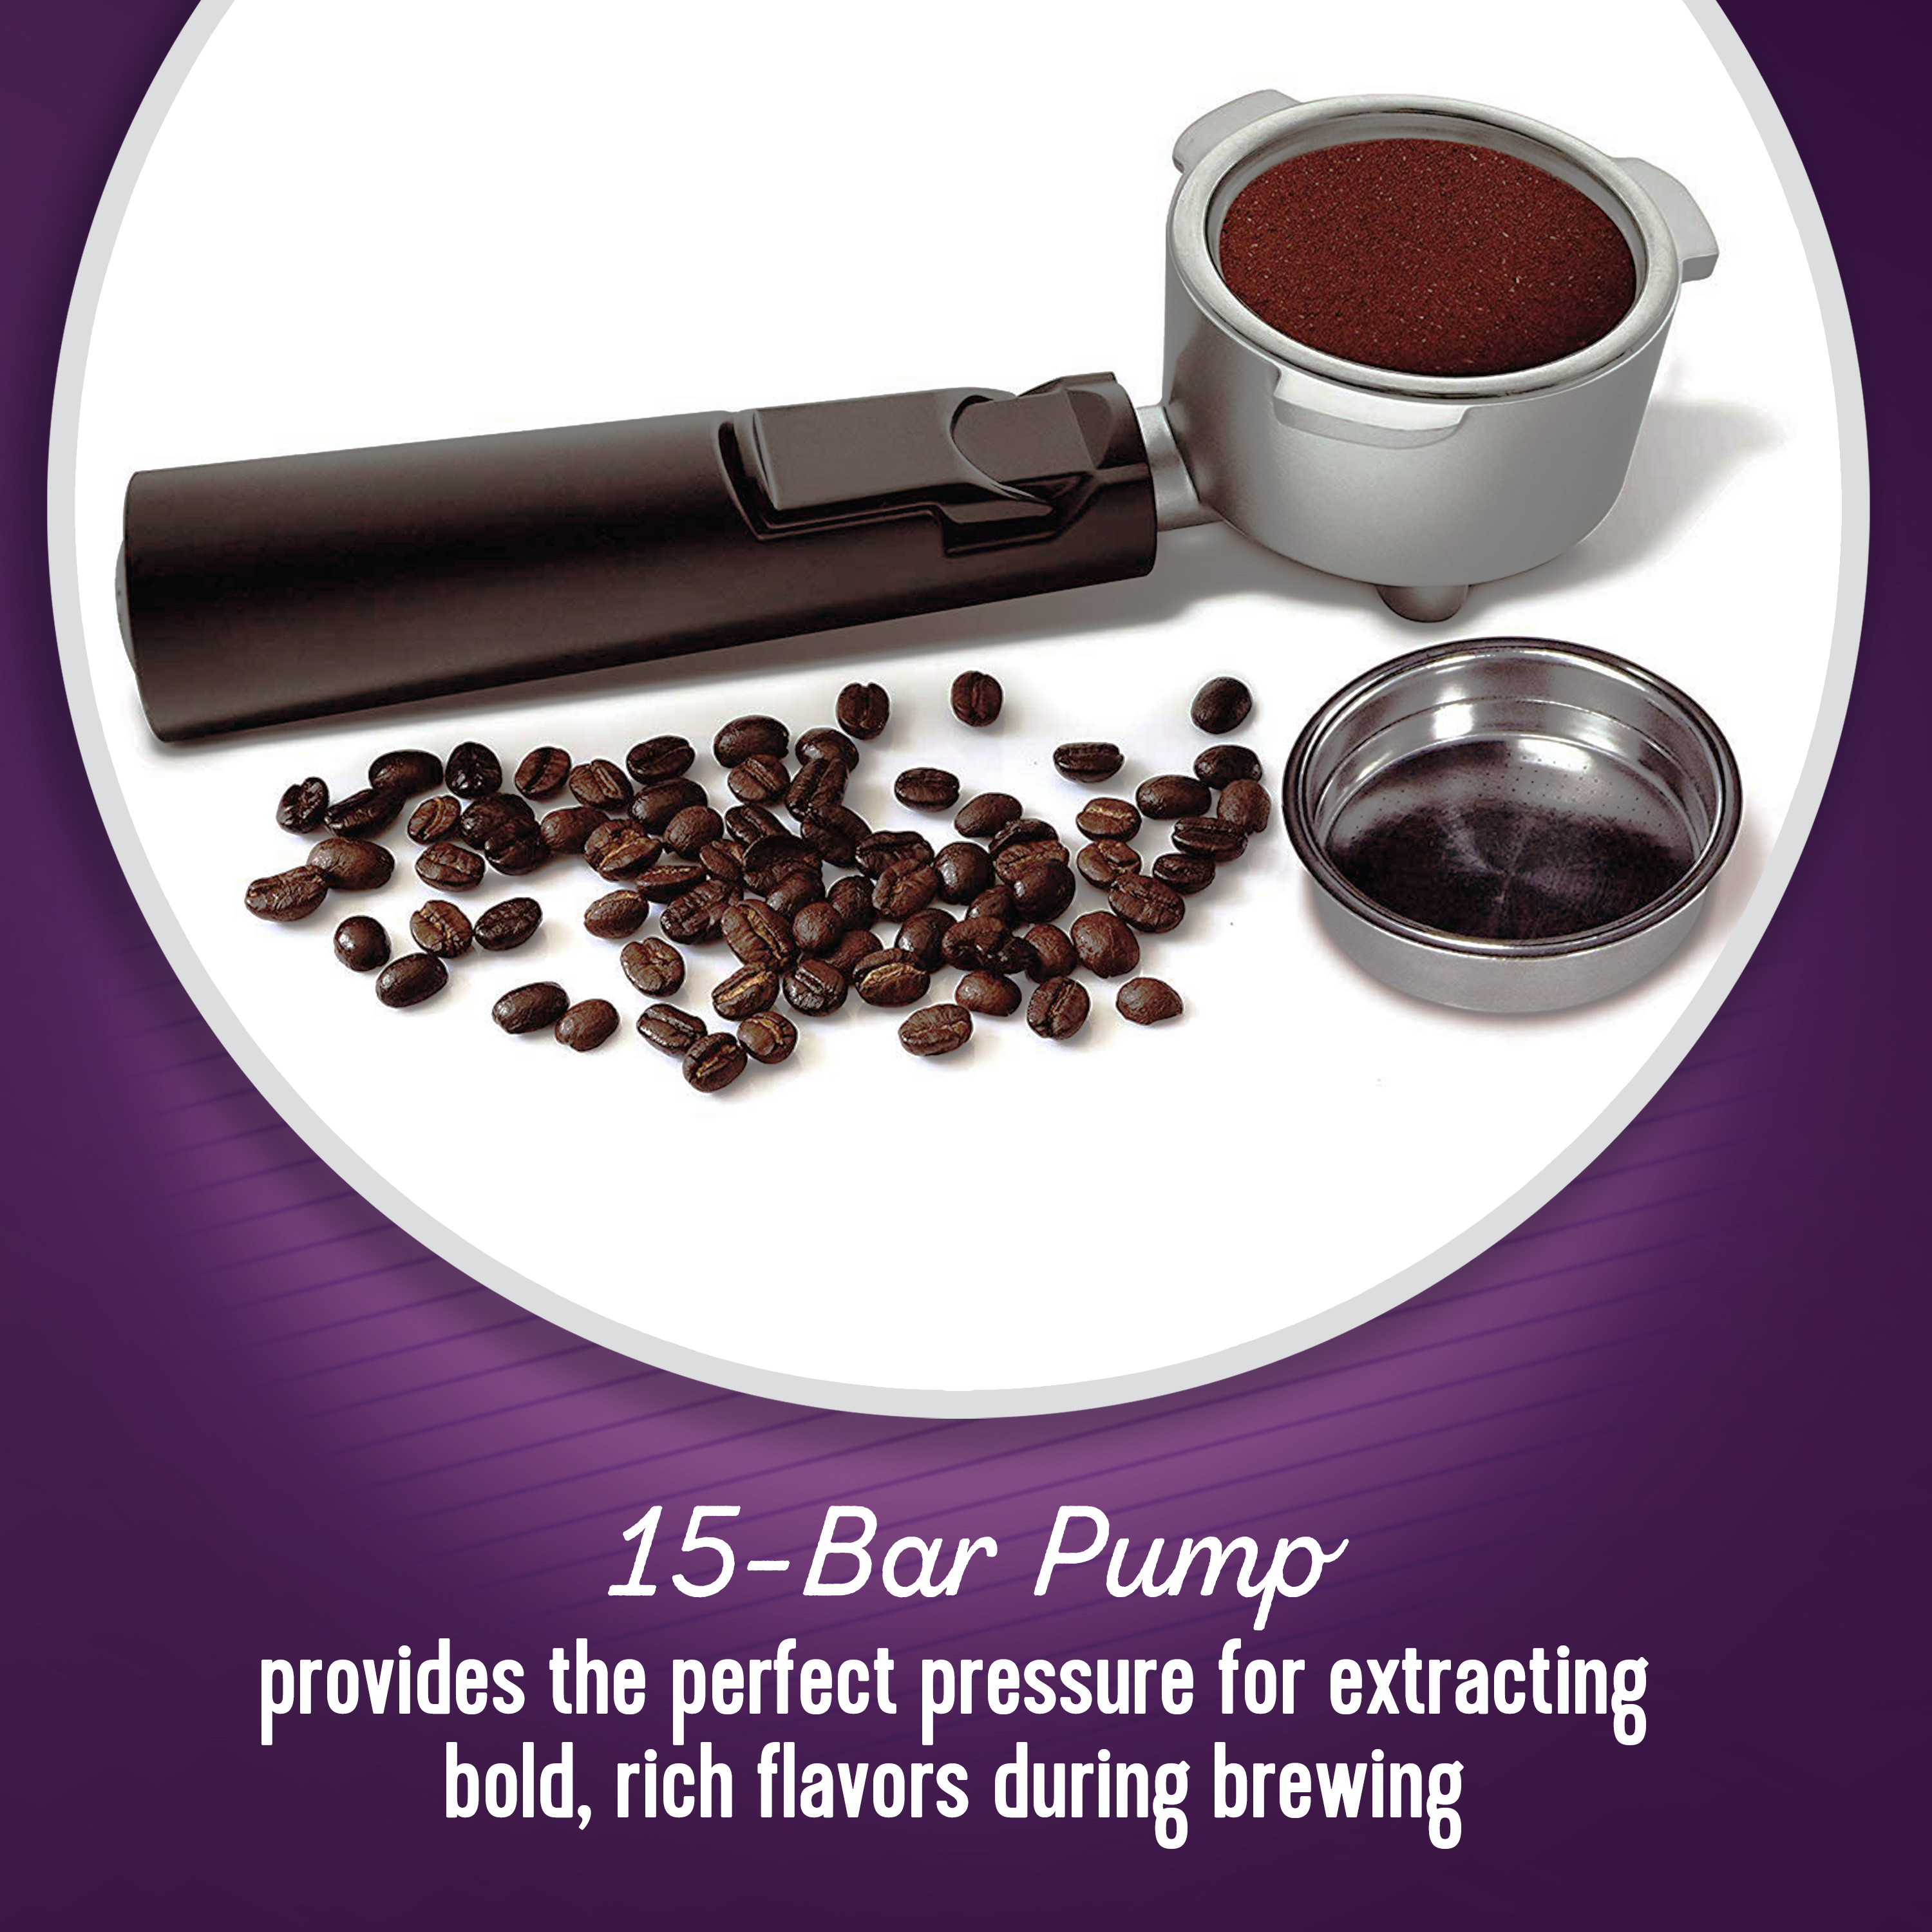 Mr. Coffee New Cafe Barista Black & Silver Premium Espresso/Latte/Cappuccino Maker - image 5 of 11